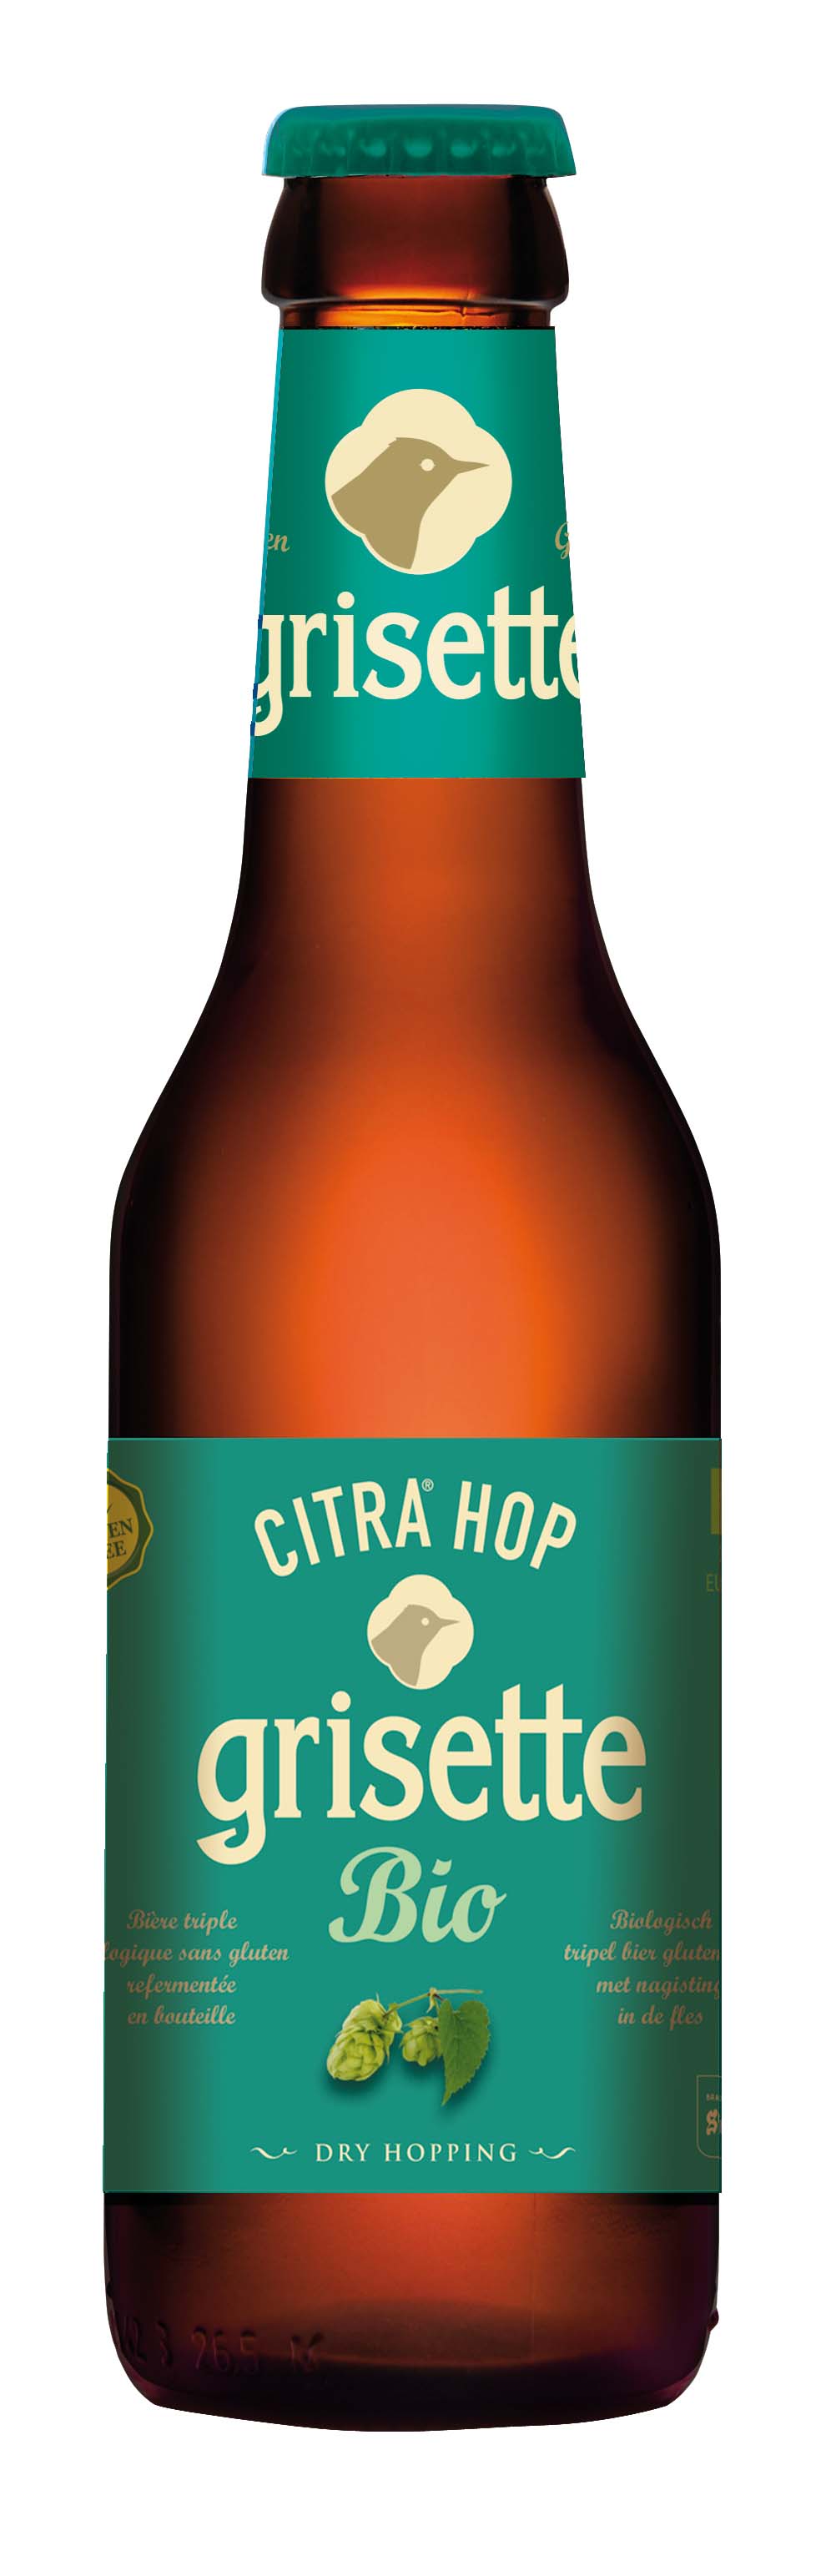 Grisette Citra hop sans gluten bio 0.25L 8% alc.